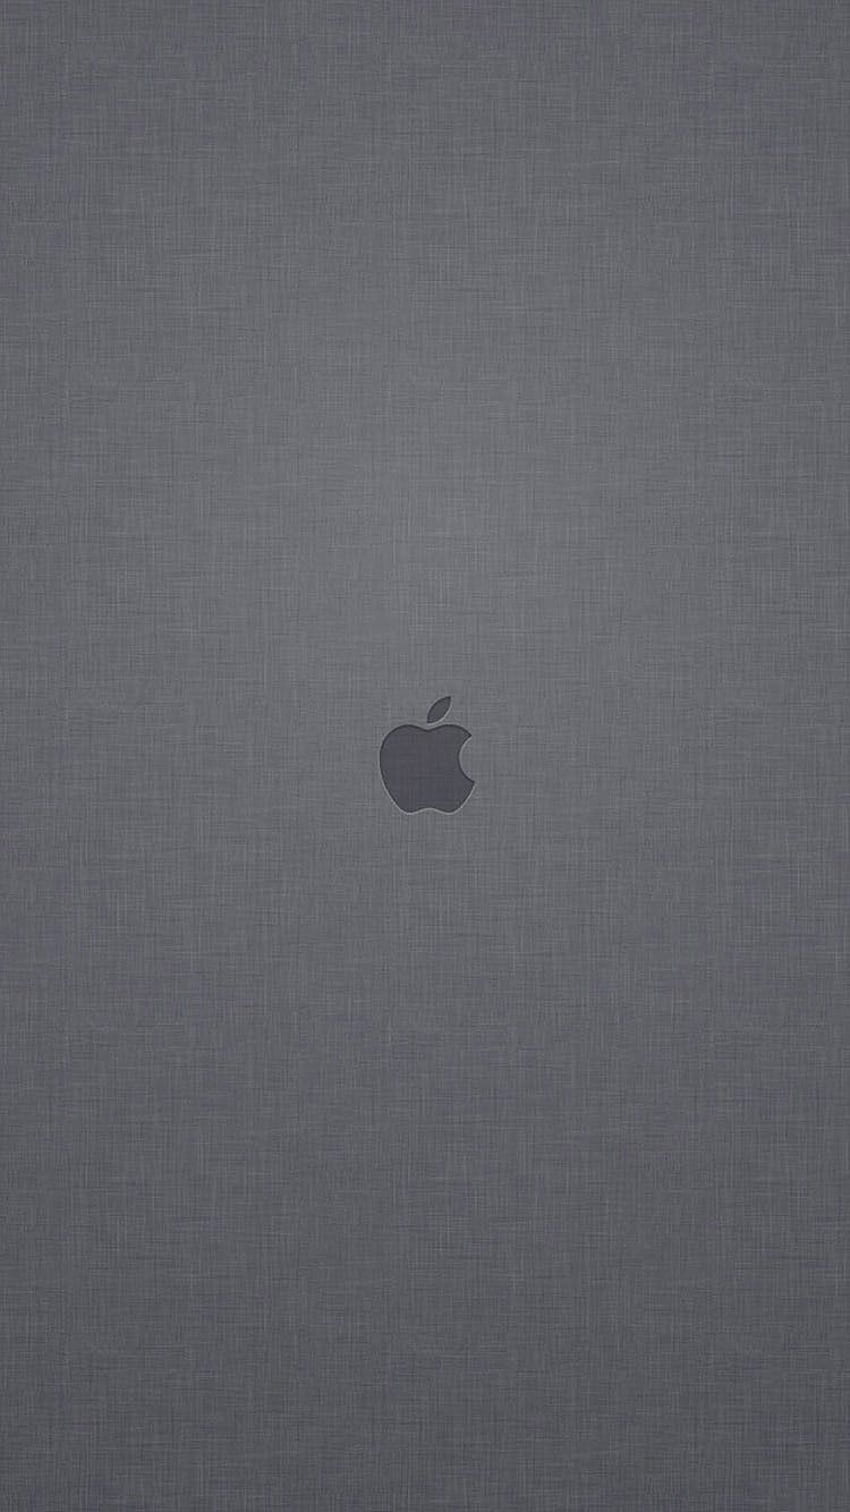 Logo Apple Latar Belakang Tekstur Linen Abu-abu iPhone 6 wallpaper ponsel HD